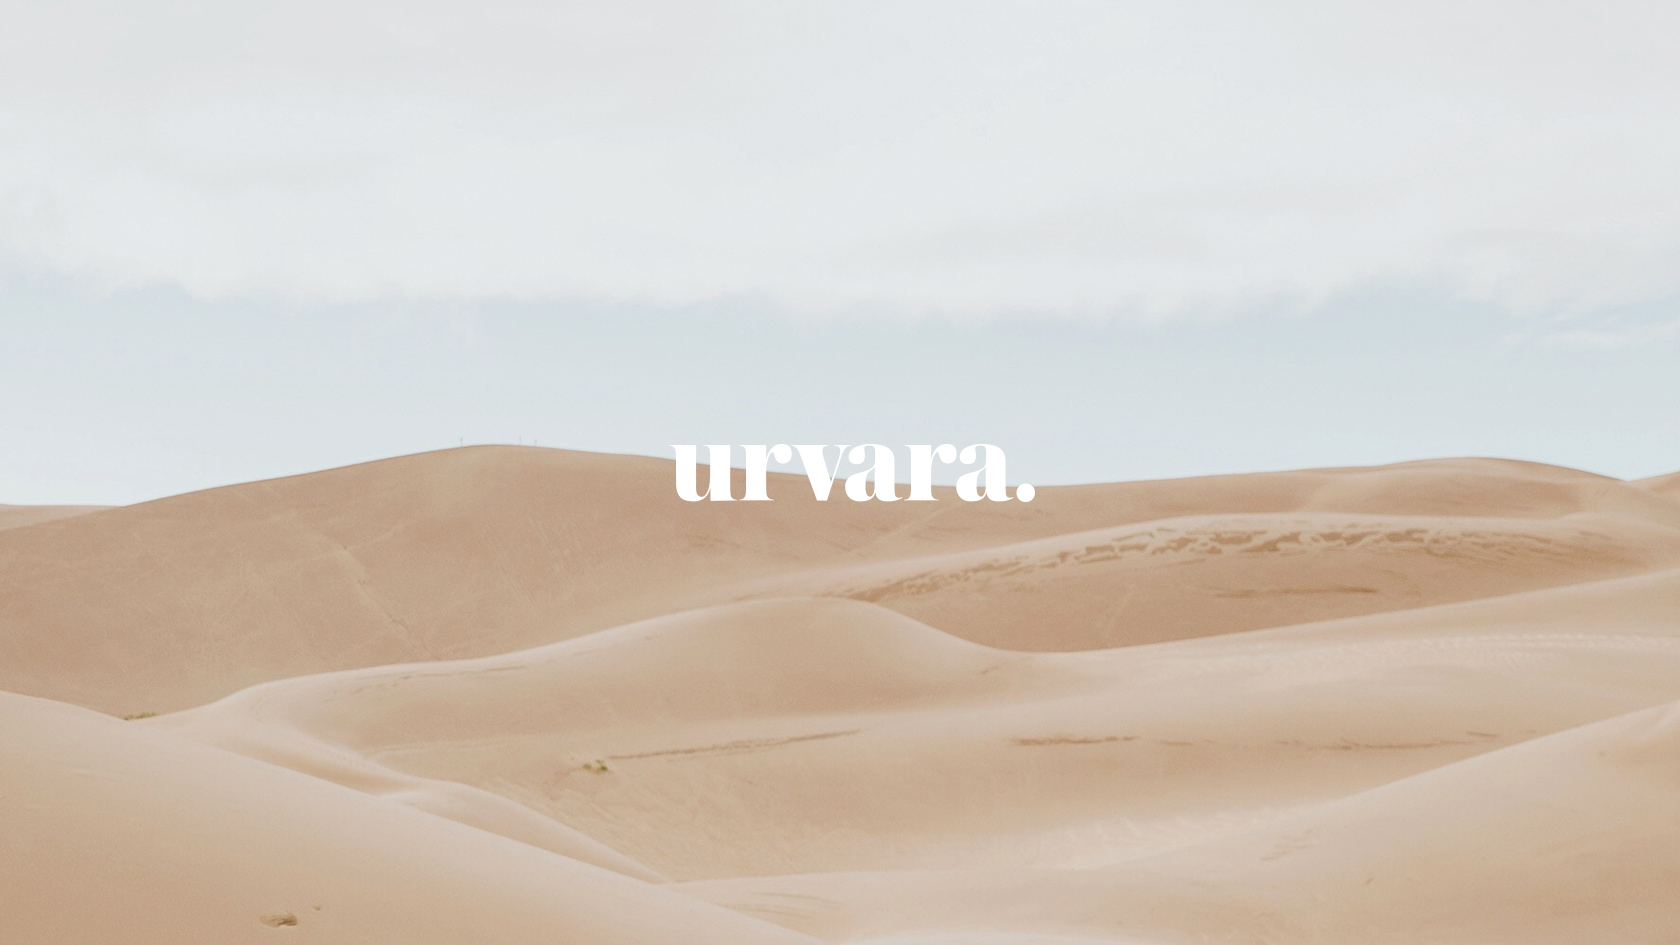 Diseño de identidad corporativa para marca de ropa sostenible - Branding para firma de slow fashion Urvara - Diseño de logotipo - Estudio de diseño gráfico en Valencia Pixelarte